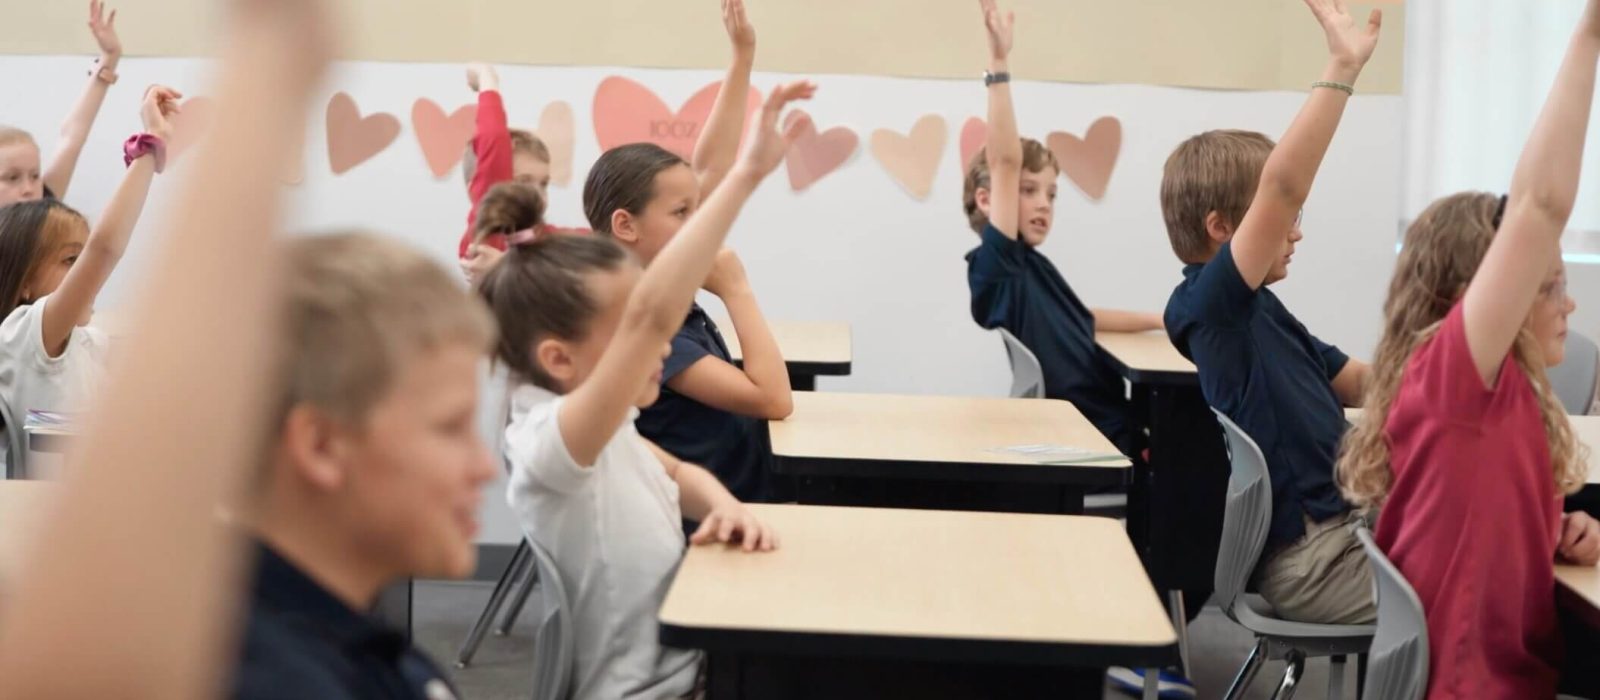 children raising hands in class